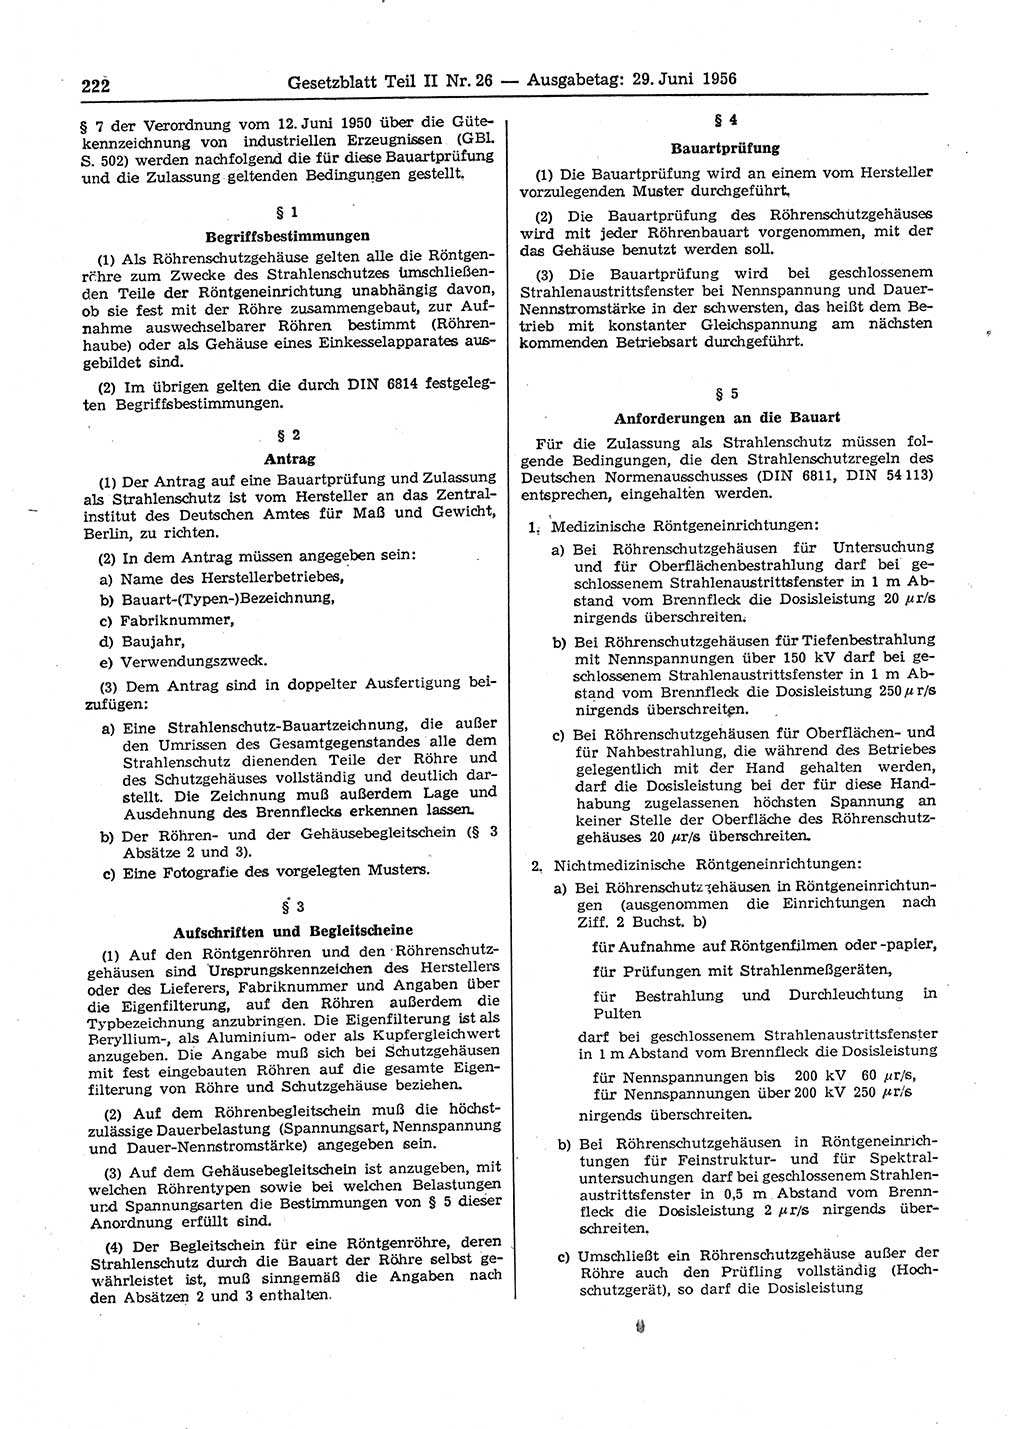 Gesetzblatt (GBl.) der Deutschen Demokratischen Republik (DDR) Teil ⅠⅠ 1956, Seite 222 (GBl. DDR ⅠⅠ 1956, S. 222)